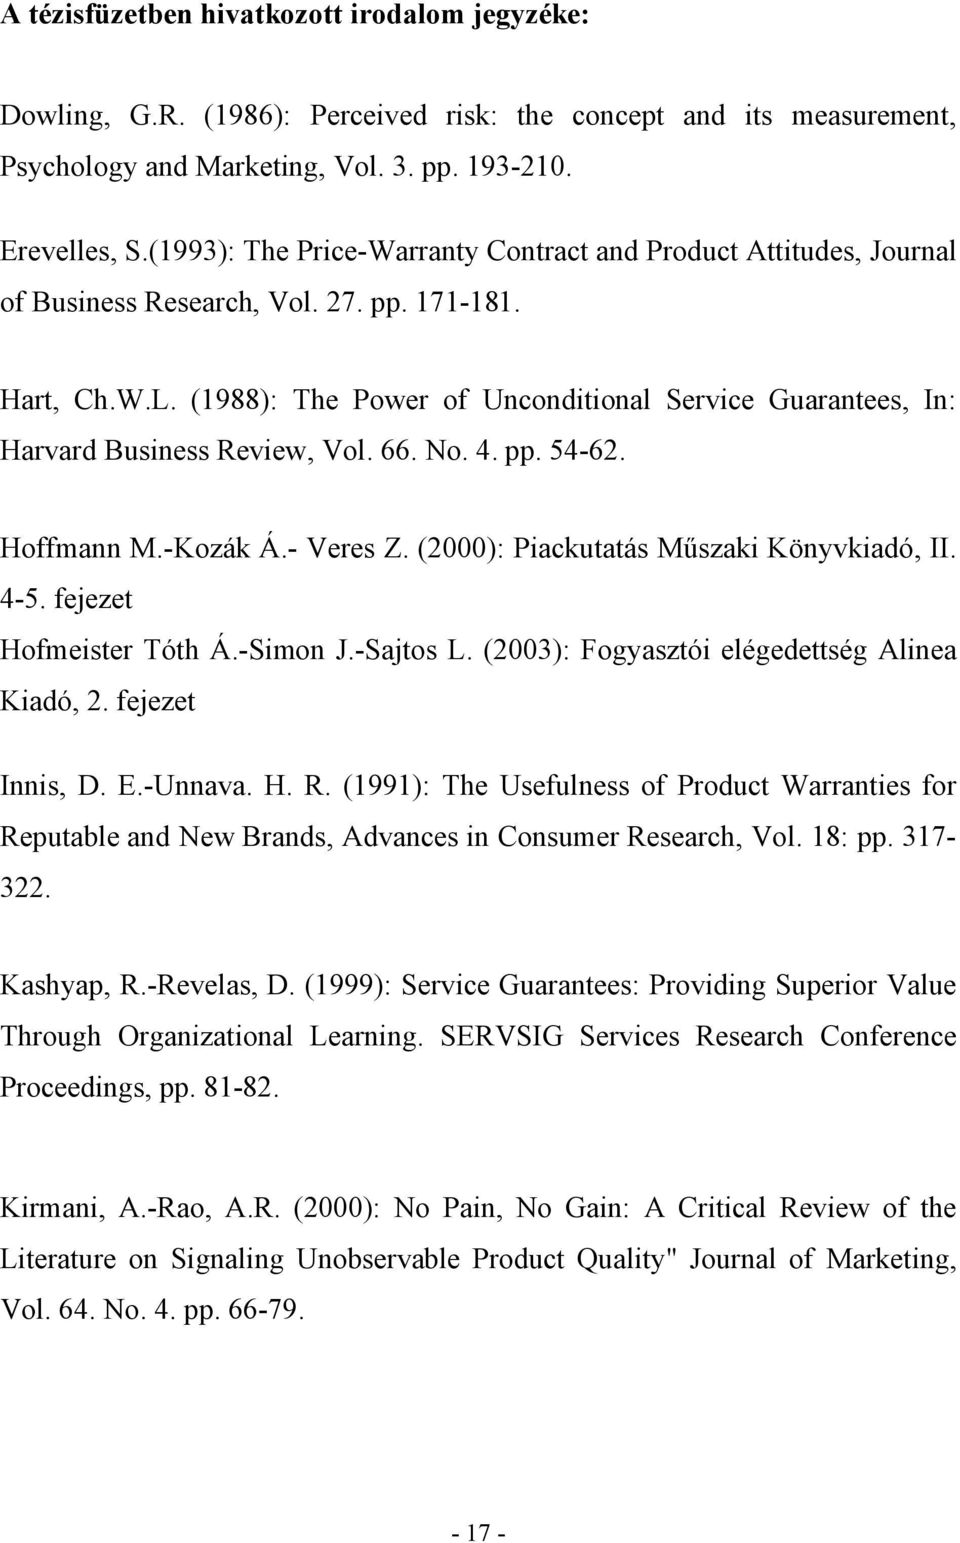 (1988): The Power of Unconditional Service Guarantees, In: Harvard Business Review, Vol. 66. No. 4. pp. 54-62. Hoffmann M.-Kozák Á.- Veres Z. (2000): Piackutatás Műszaki Könyvkiadó, II. 4-5.